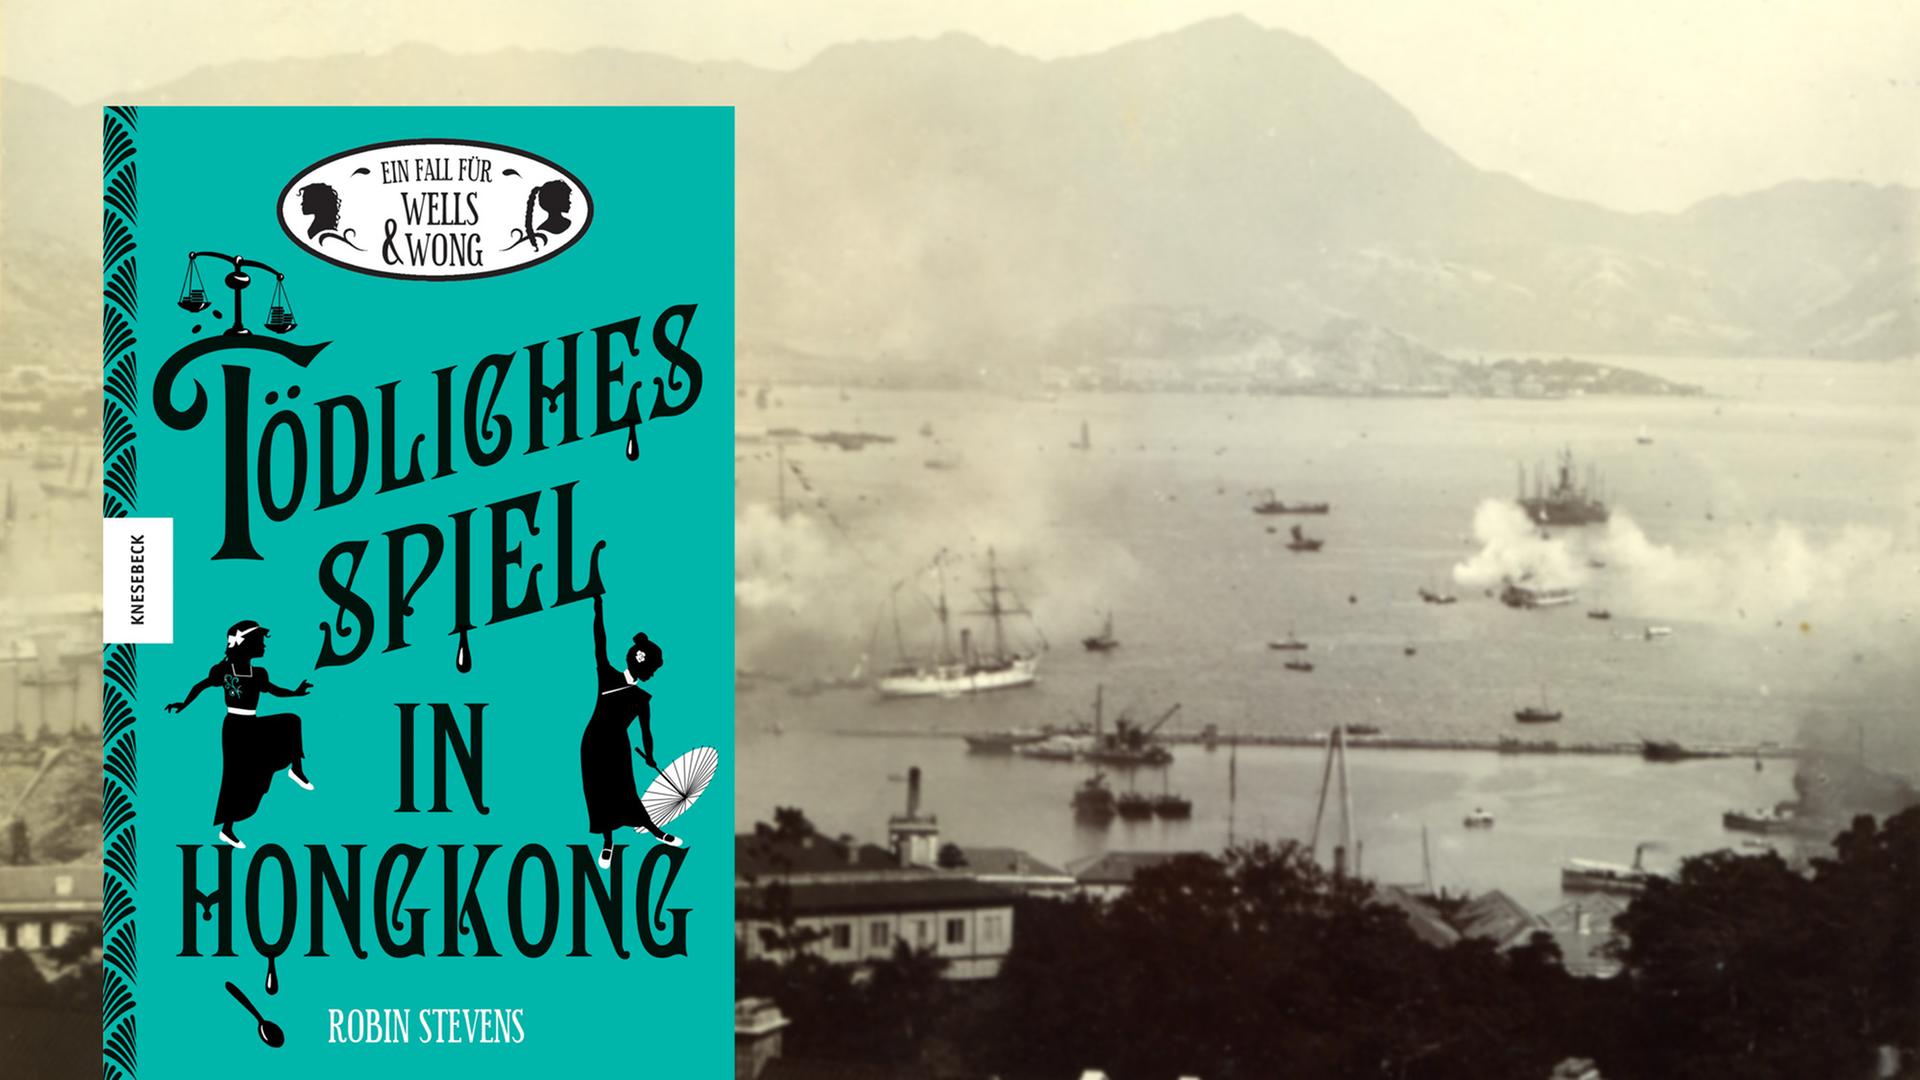 Cover von Robin Stevens "Tödliches Spiel in Hongkong", im Hintergrund ist eine Aufnahme von Hafen in Hongkong um 1930 zu sehen